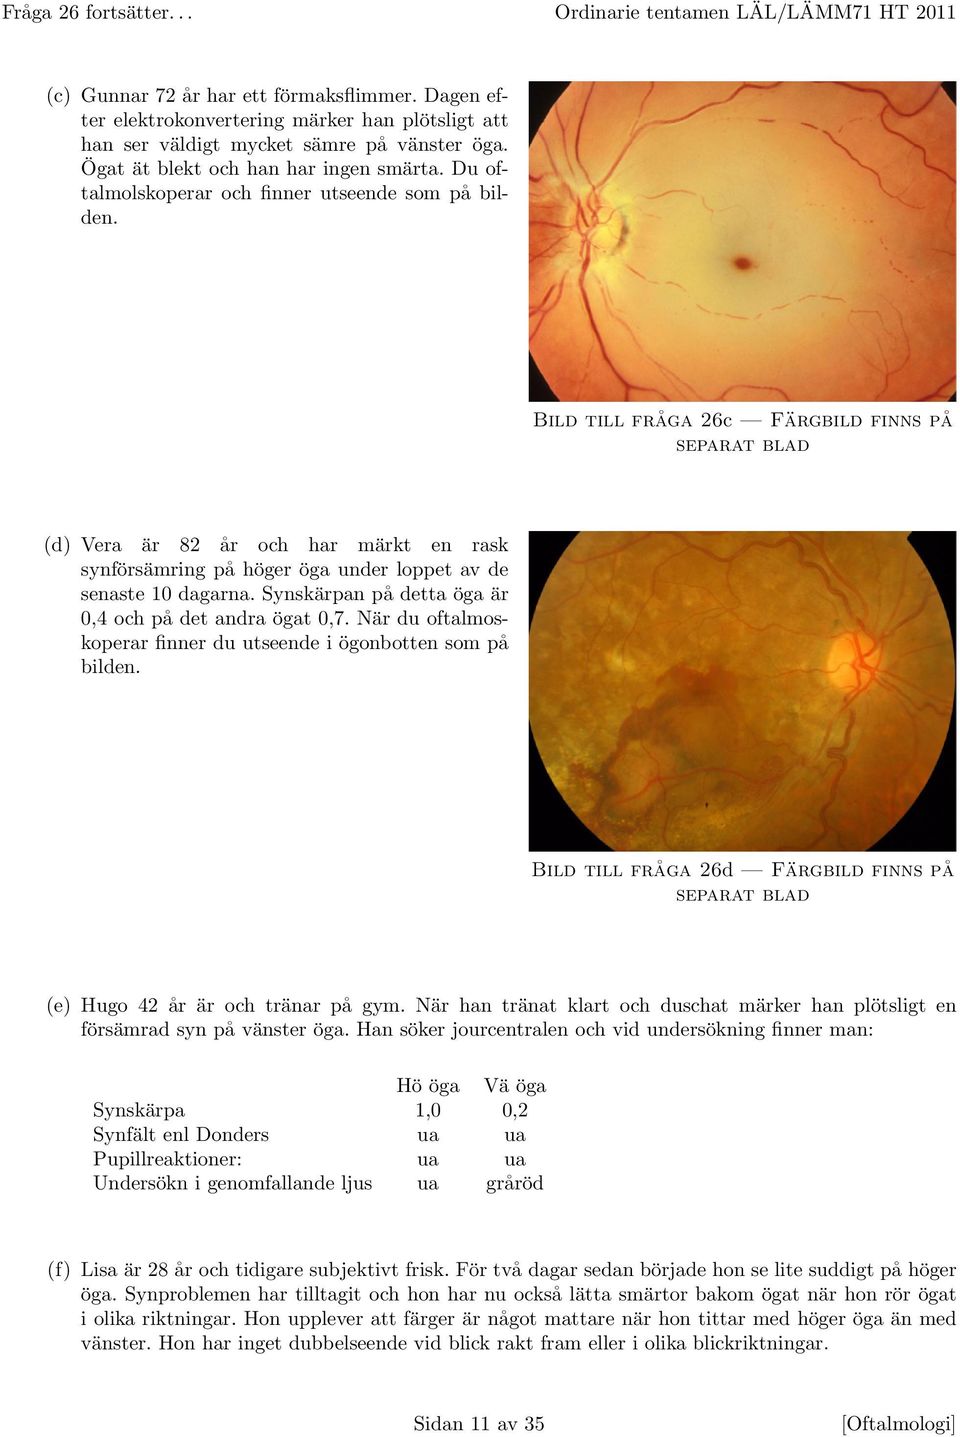 Bild till fråga 26c Färgbild finns på separat blad (d) Vera är 82 år och har märkt en rask synförsämring på höger öga under loppet av de senaste 10 dagarna.